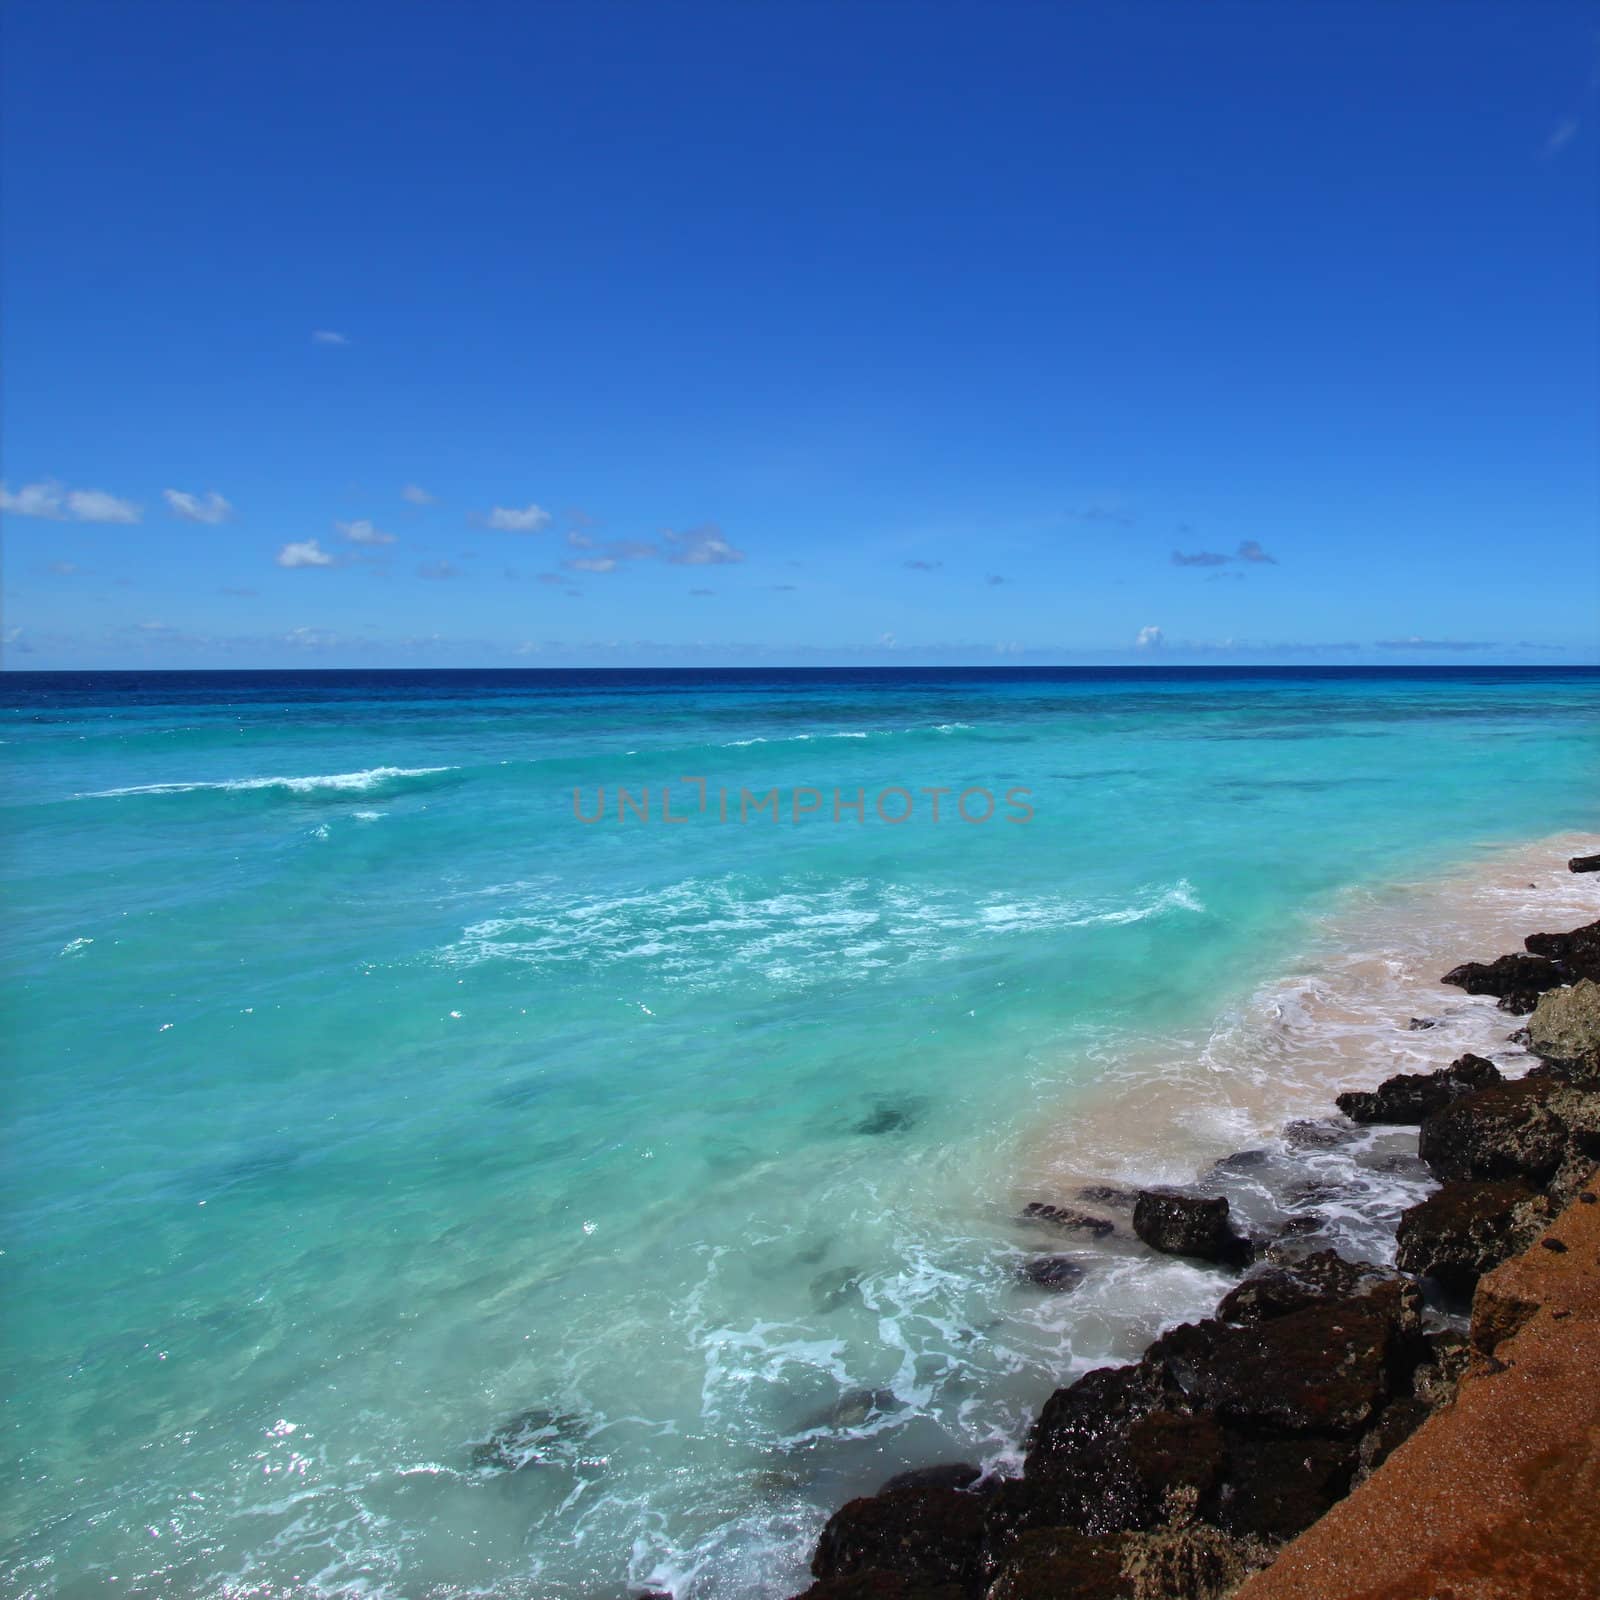 Rocky coastline of Barbados by Wirepec